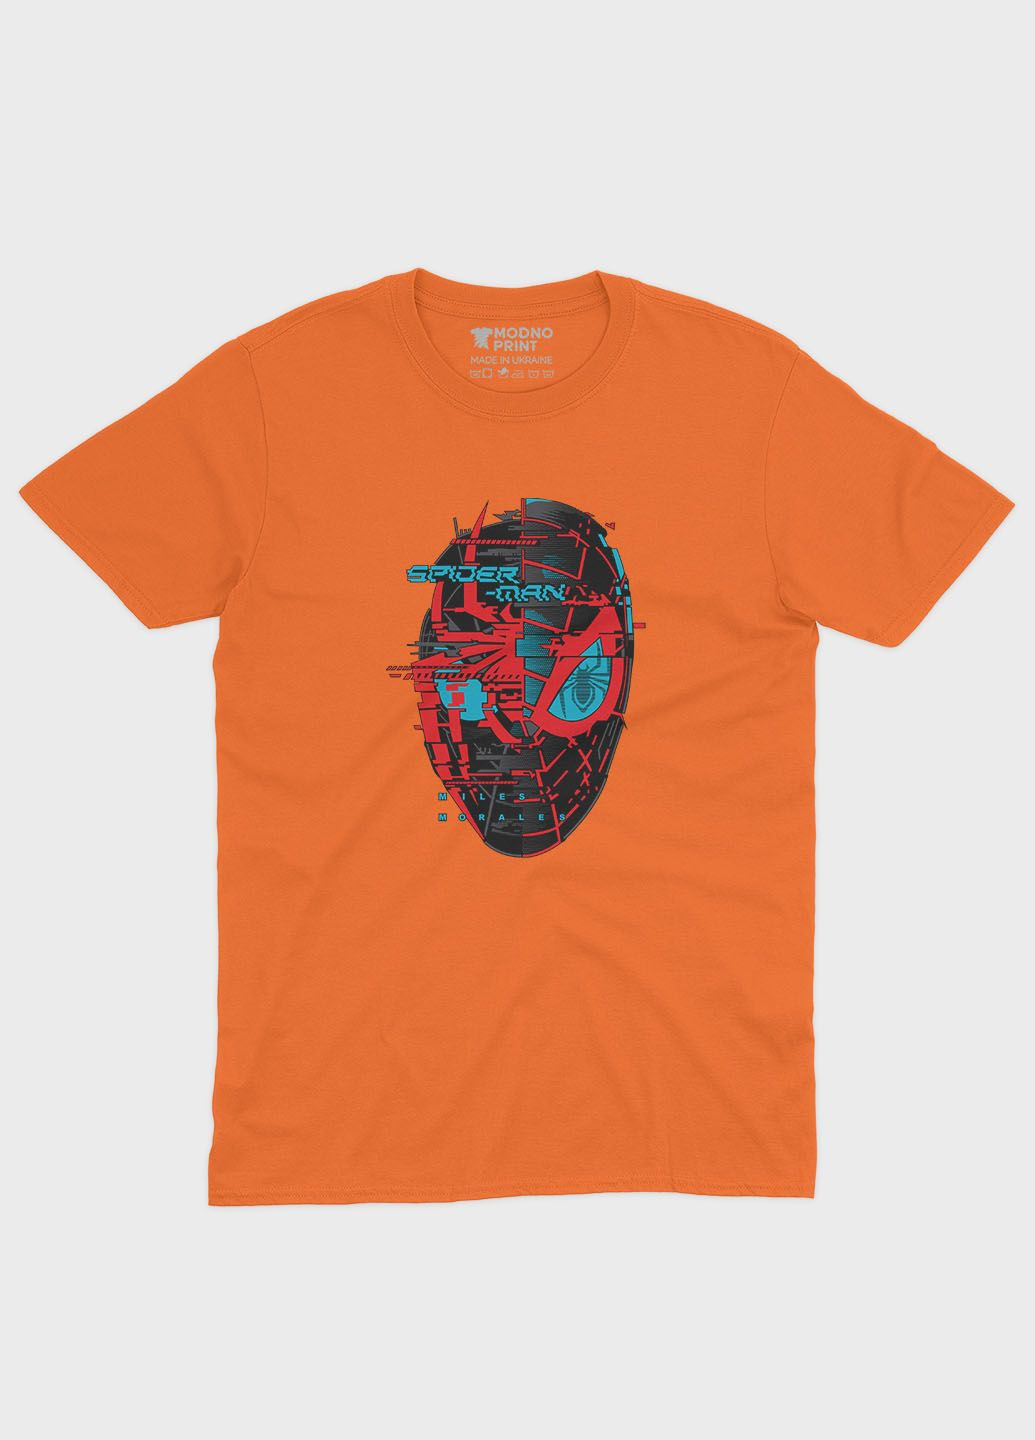 Помаранчева демісезонна футболка для хлопчика з принтом супергероя - людина-павук (ts001-1-ora-006-014-034-b) Modno